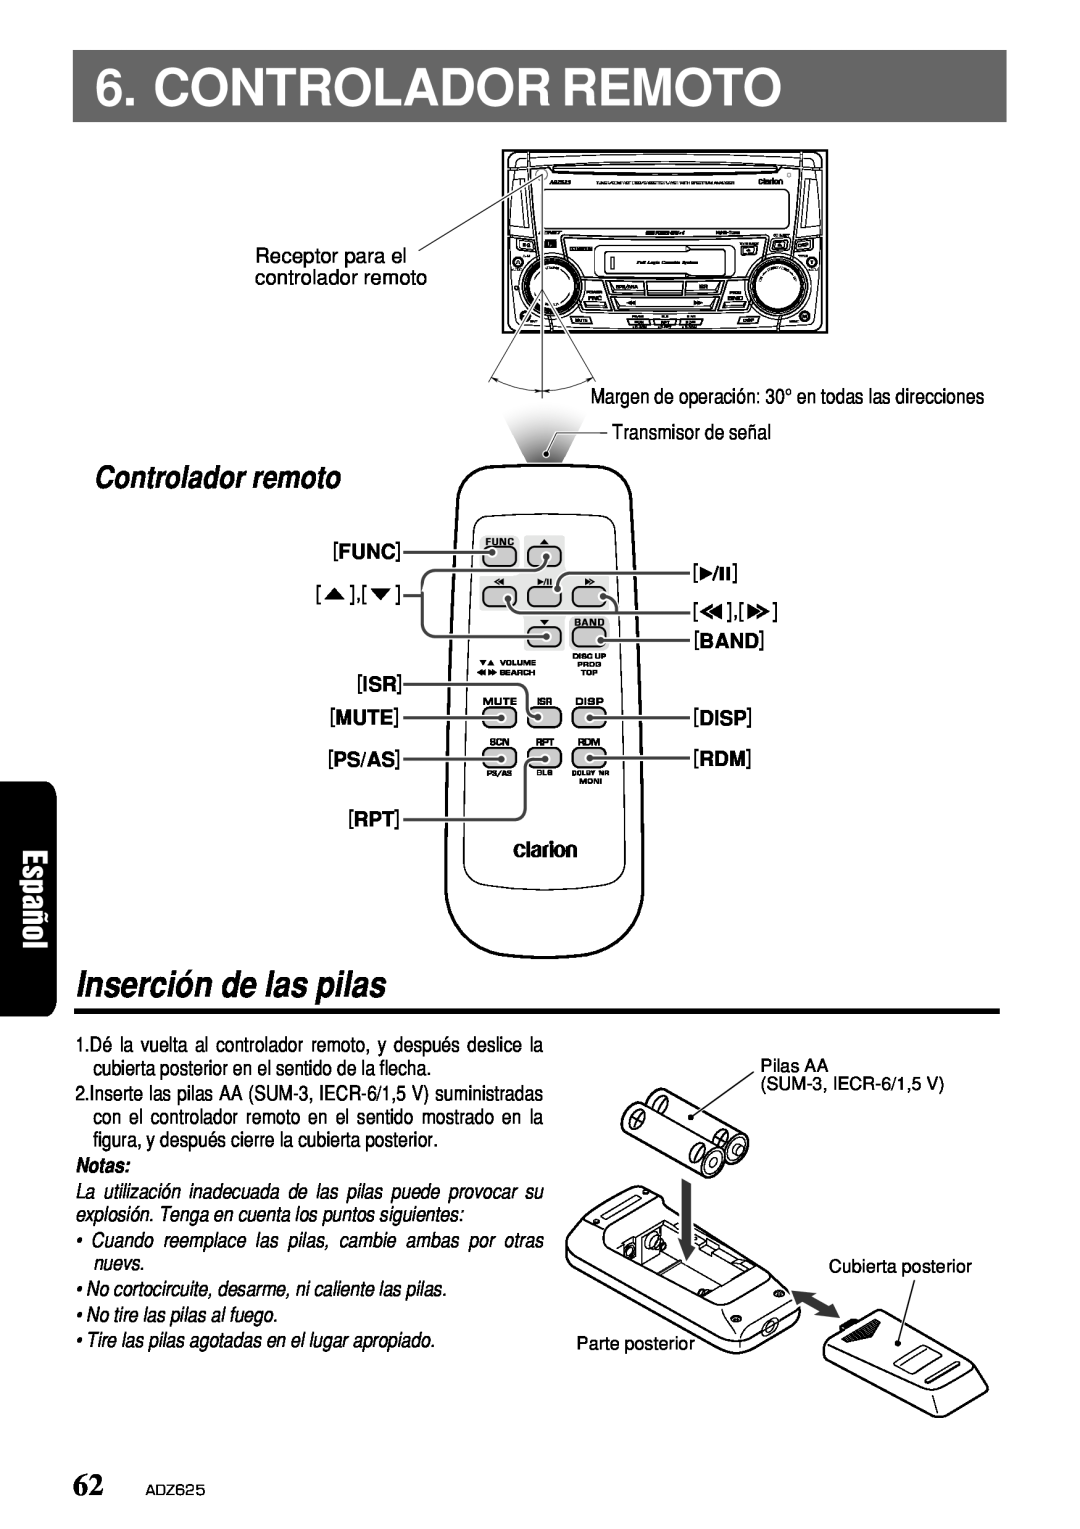 Clarion owner manual Controlador Remoto, Inserción de las pilas, Controlador remoto, Notas, 62 ADZ625 